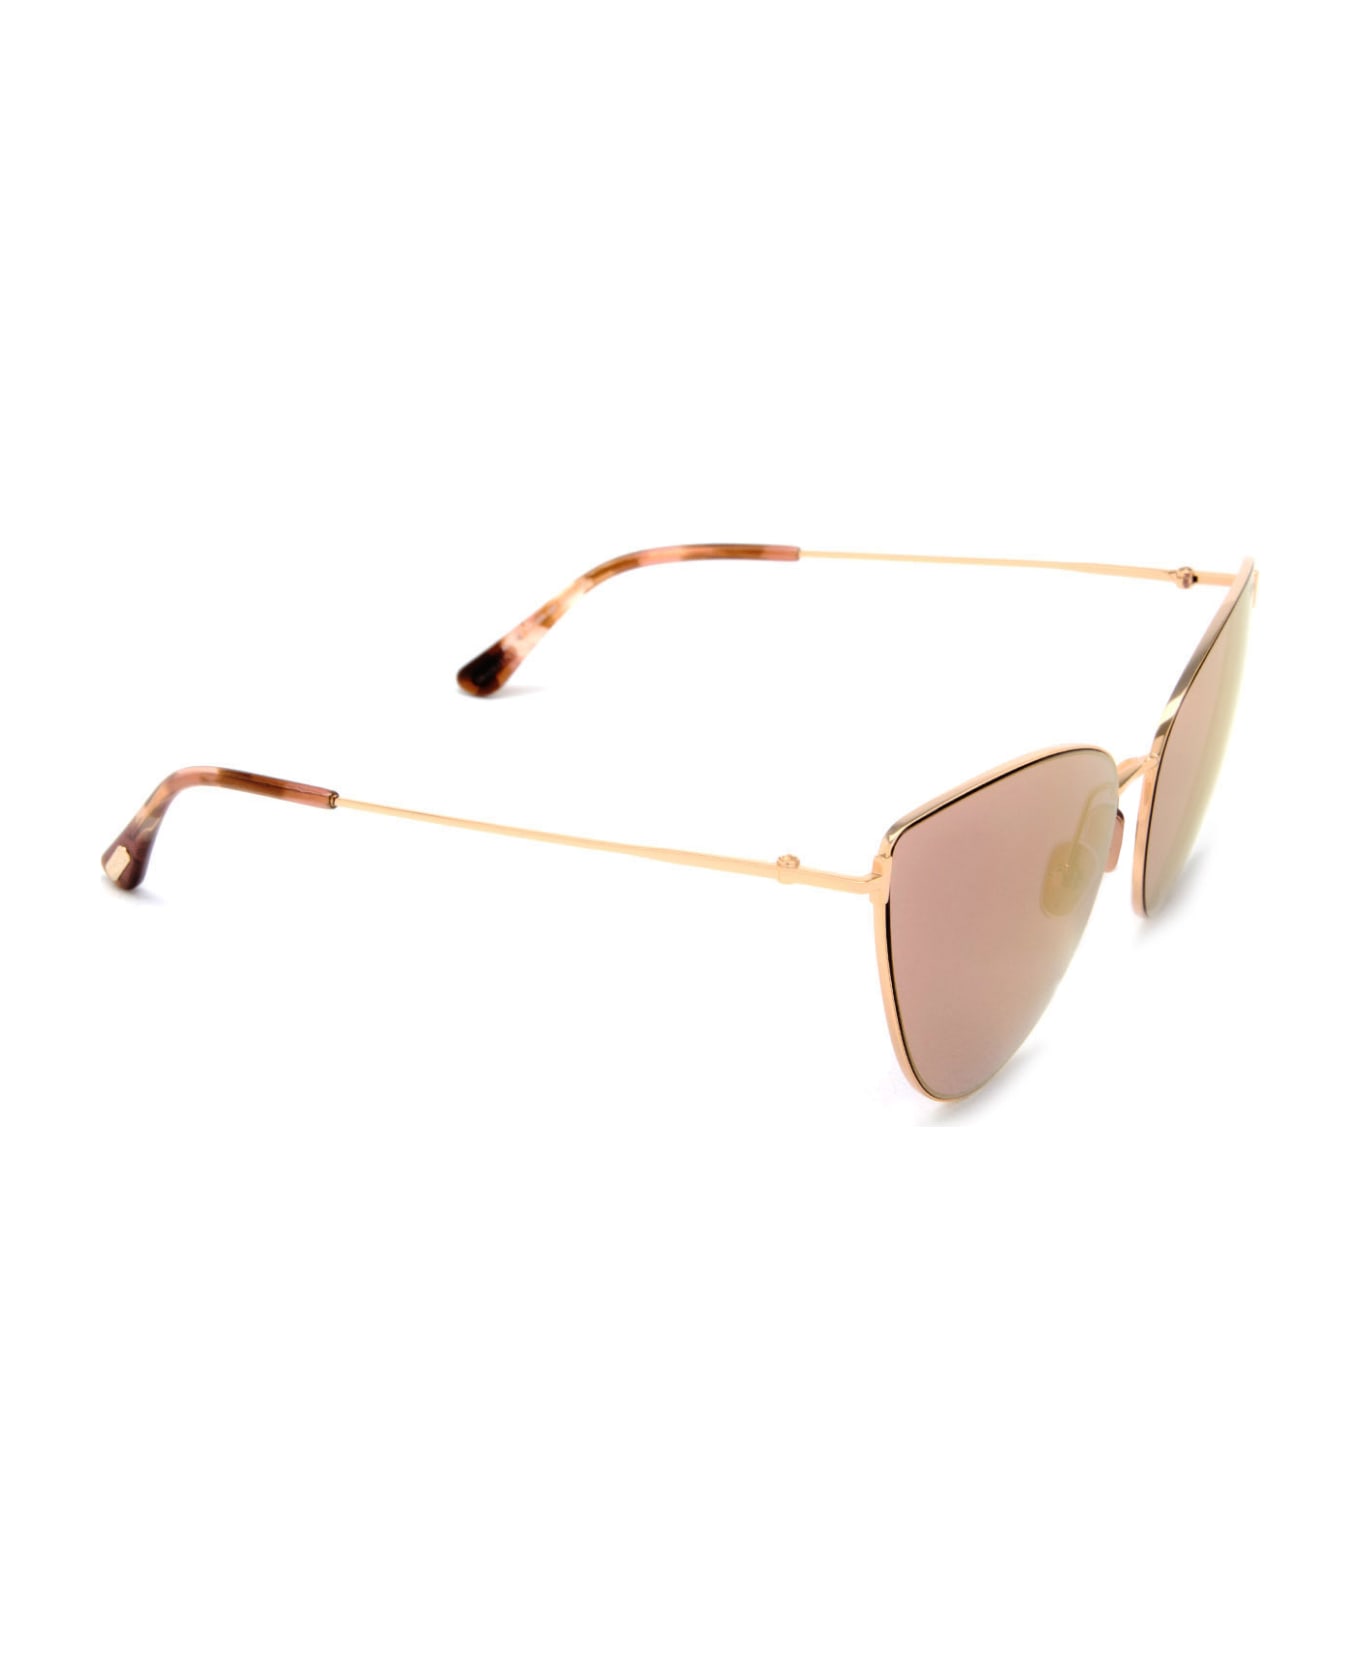 Tom Ford Eyewear Ft1005 Shiny Rose Gold Sunglasses - Shiny Rose Gold サングラス